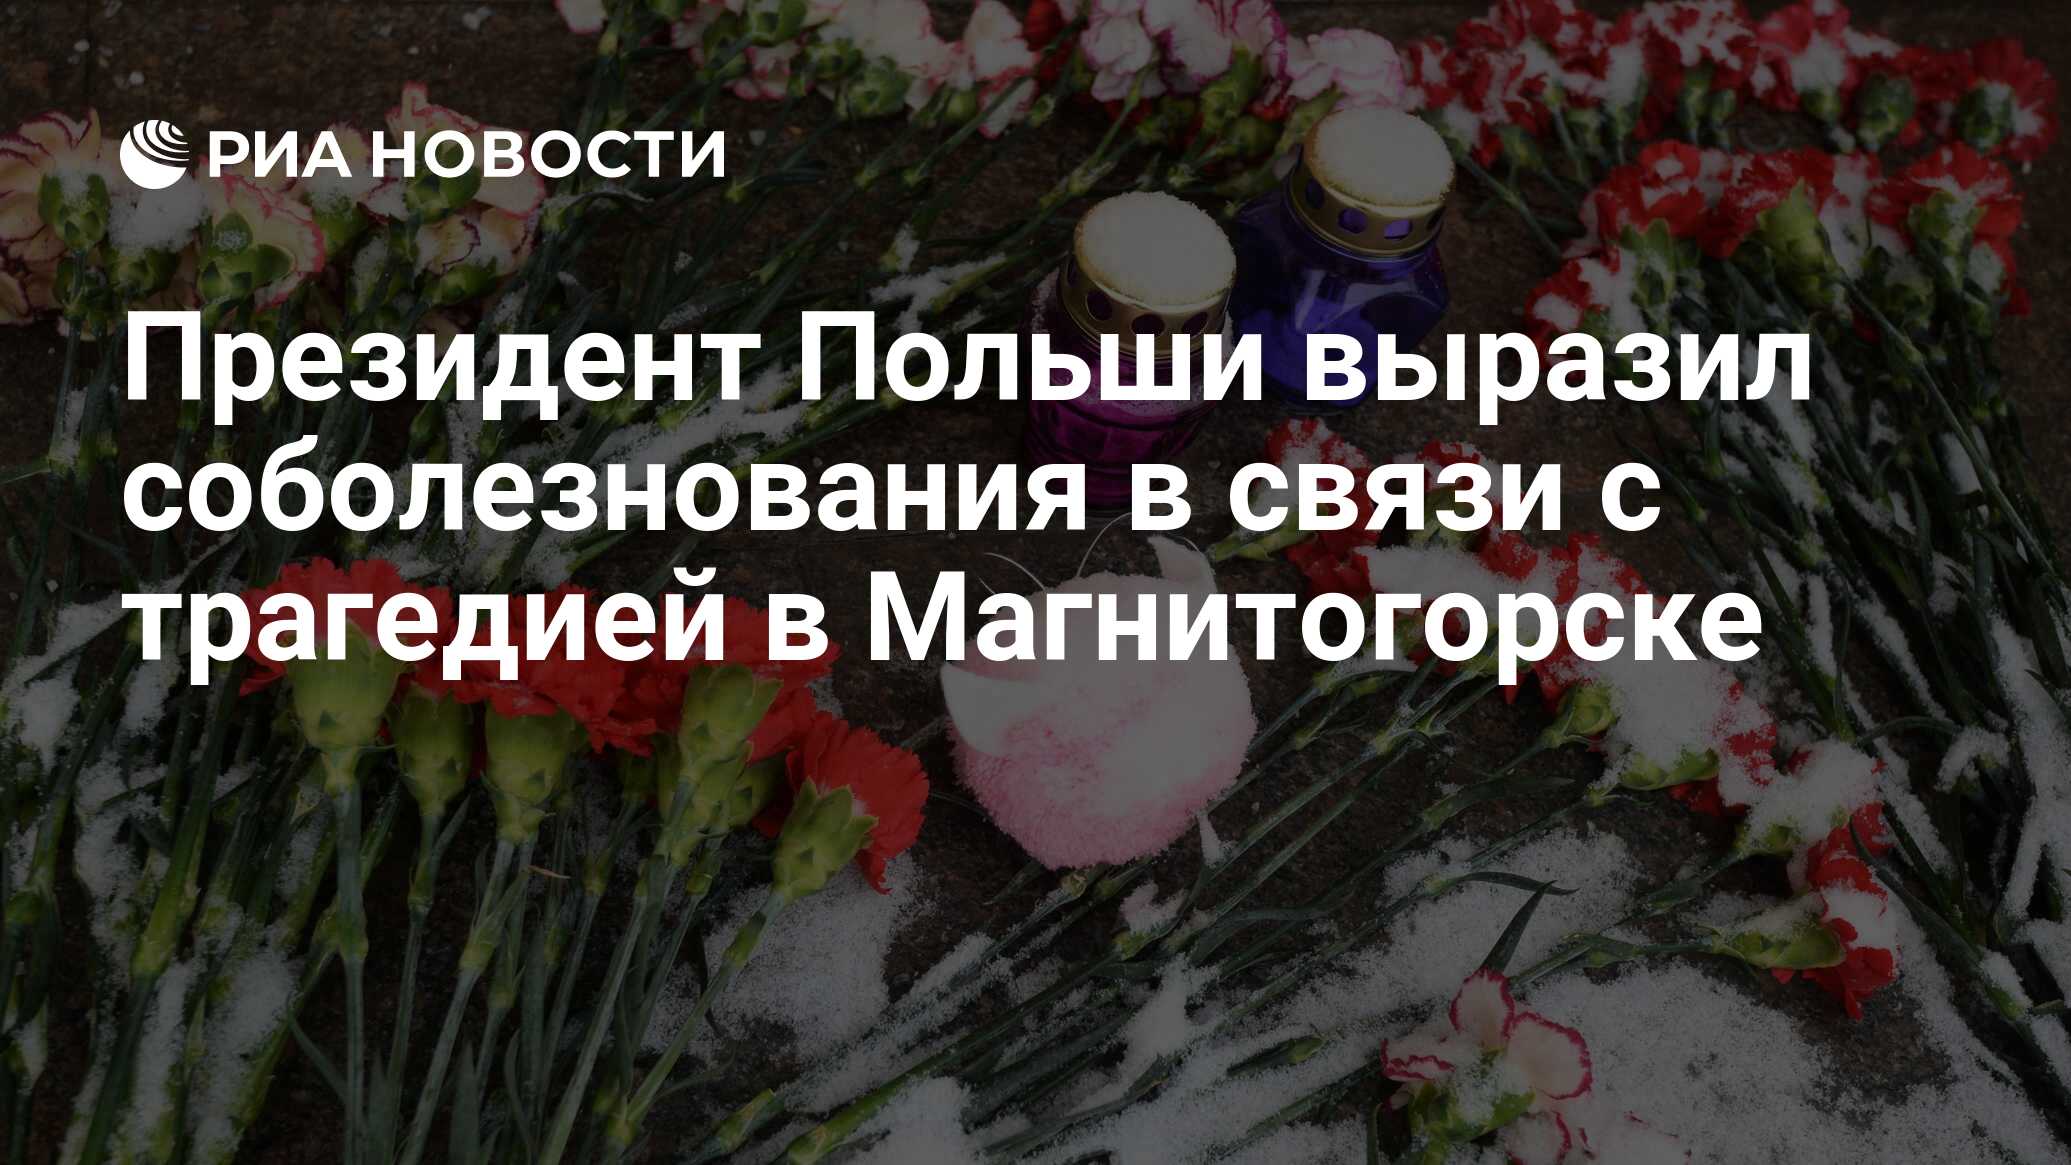 Таджикистан не выразил соболезнования. Выражает соболезнования в связи с трагическими событиями. Выразить соболезнование. Выражаем соболезнования семьям погибших.